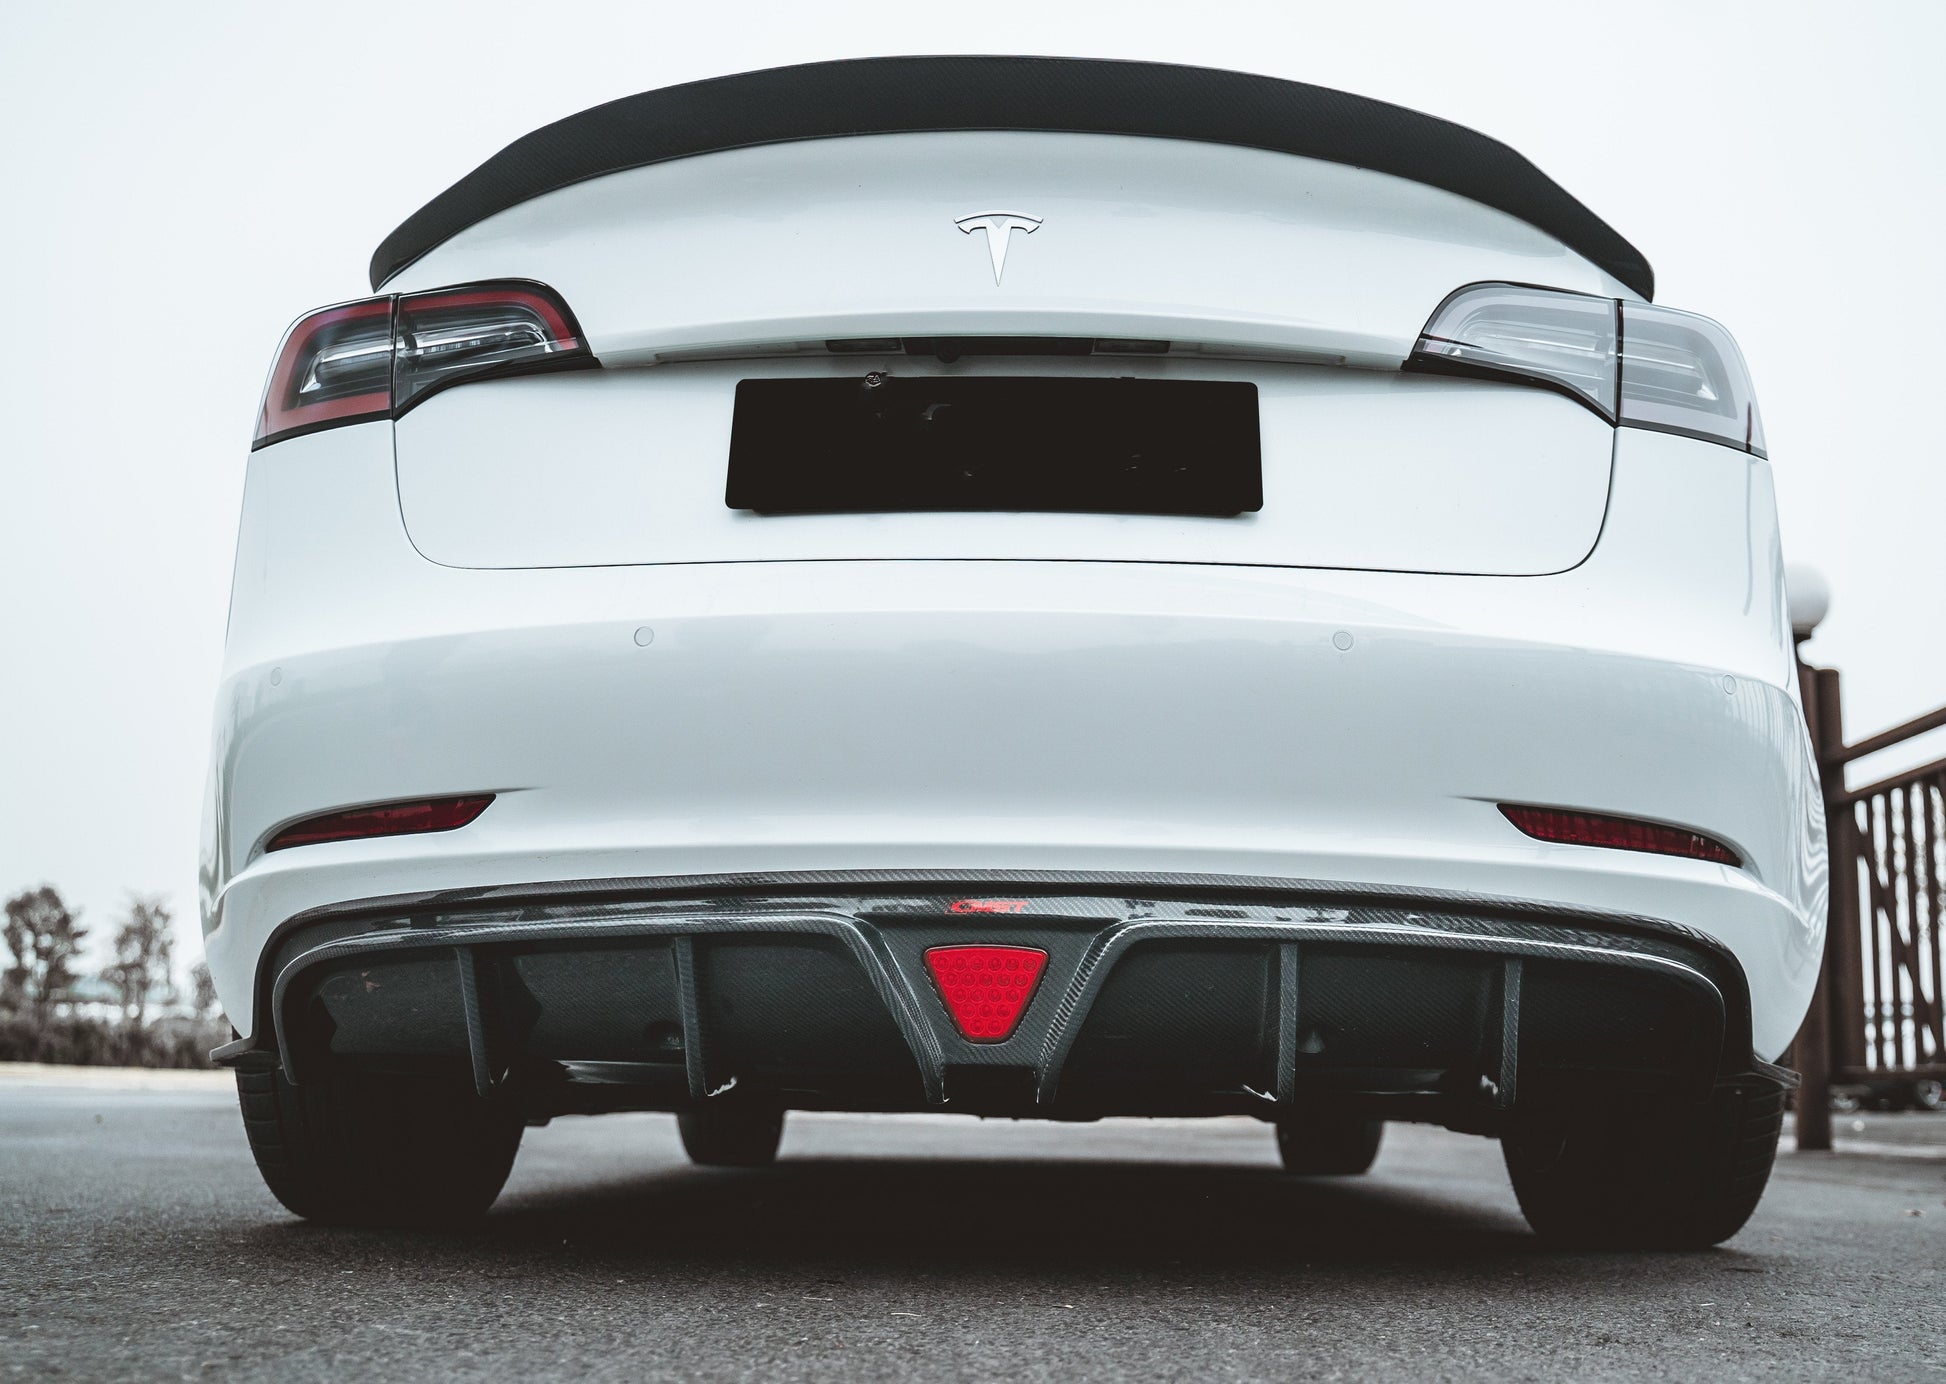 TESERY×CMST Tesla Model 3 Carbon Fiber Rear Spoiler - Tesery Official Store